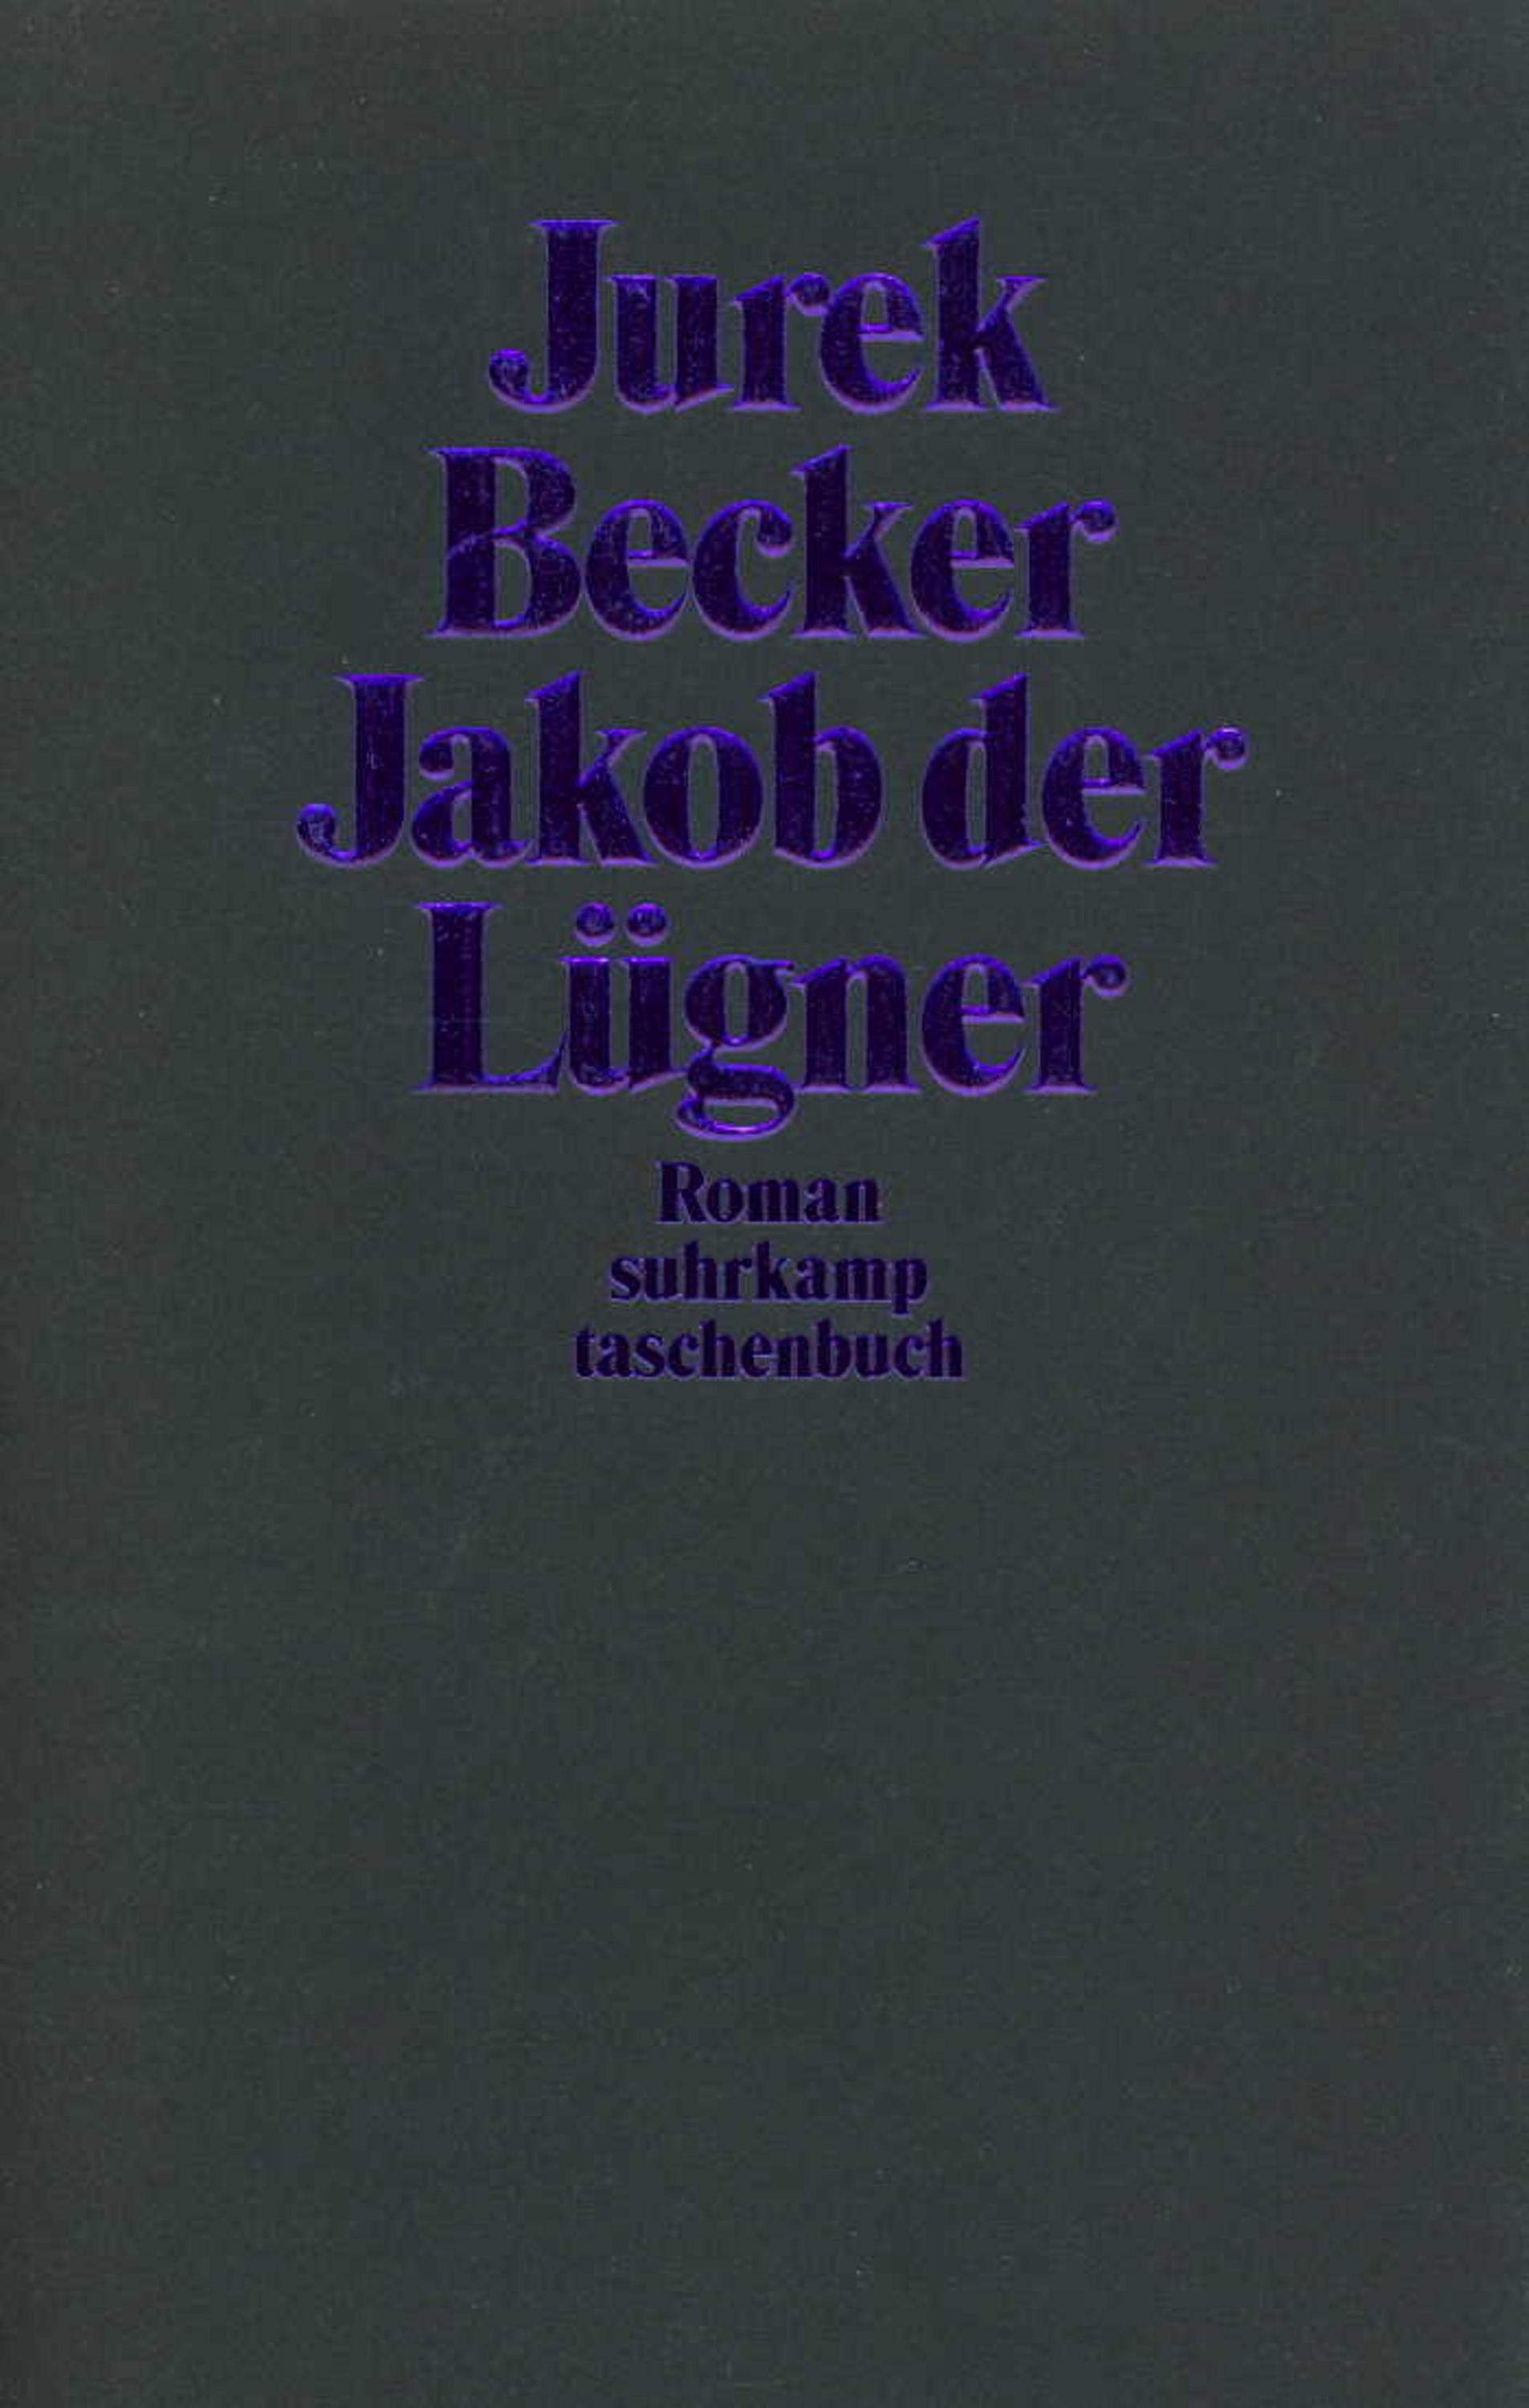 Jakob Der Lügner - Jurek Becker  Taschenbuch